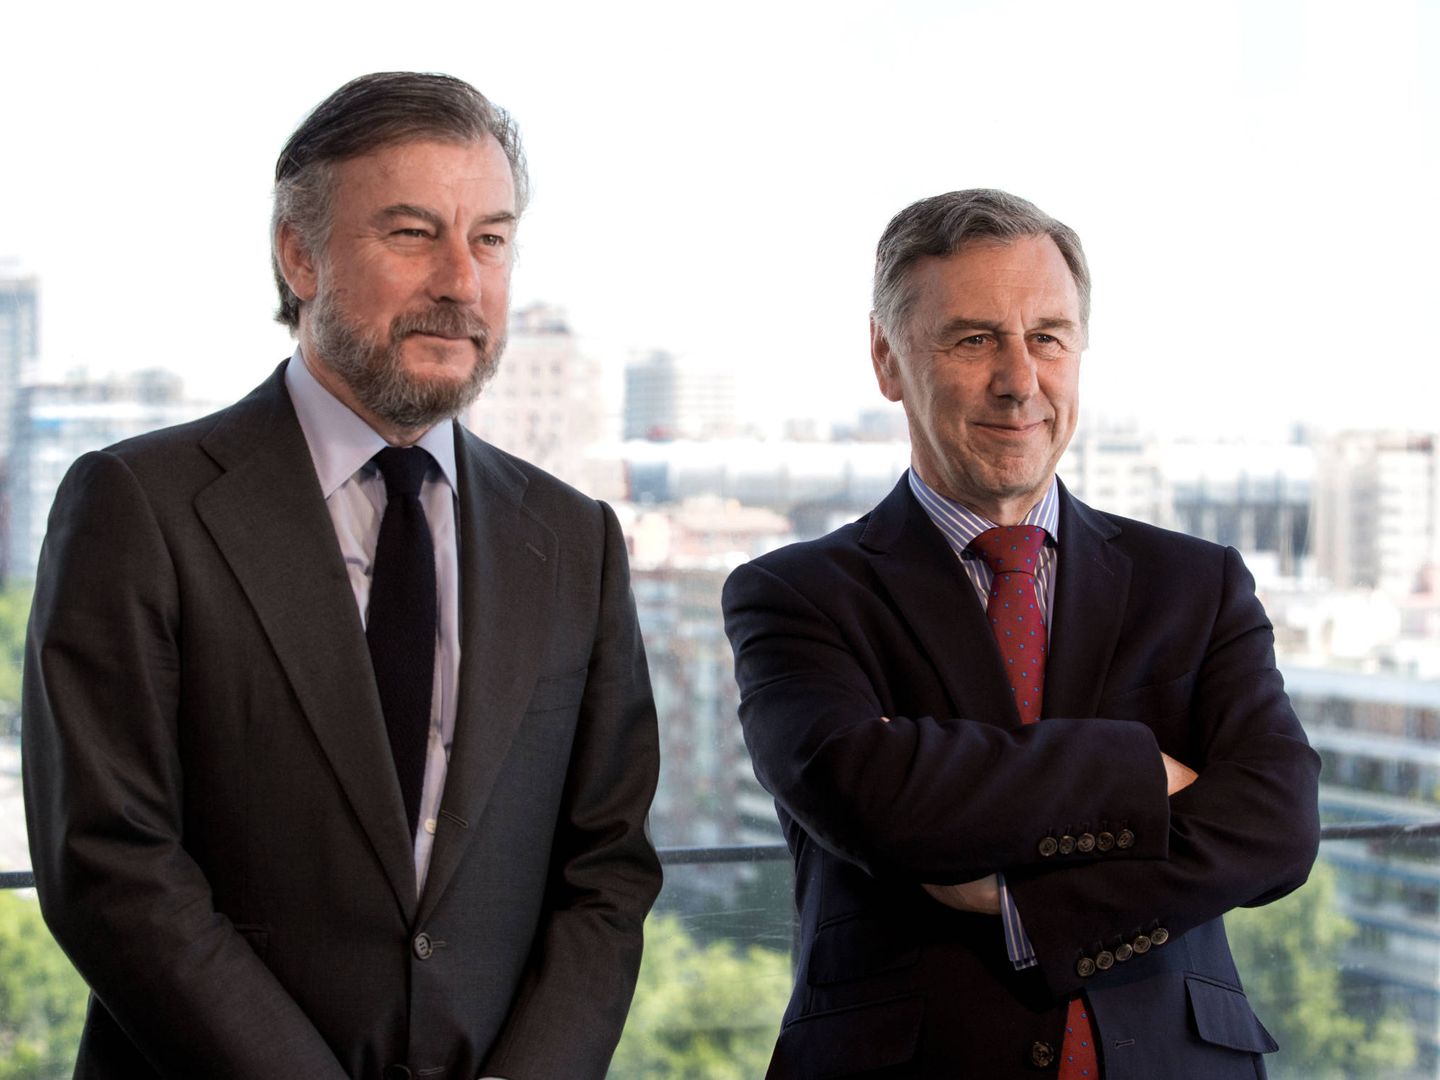 Rafael Merry del Val y Stephen Newman compartieron el puesto de consejero delegado el primer año de Savills-Aguirre Newman.